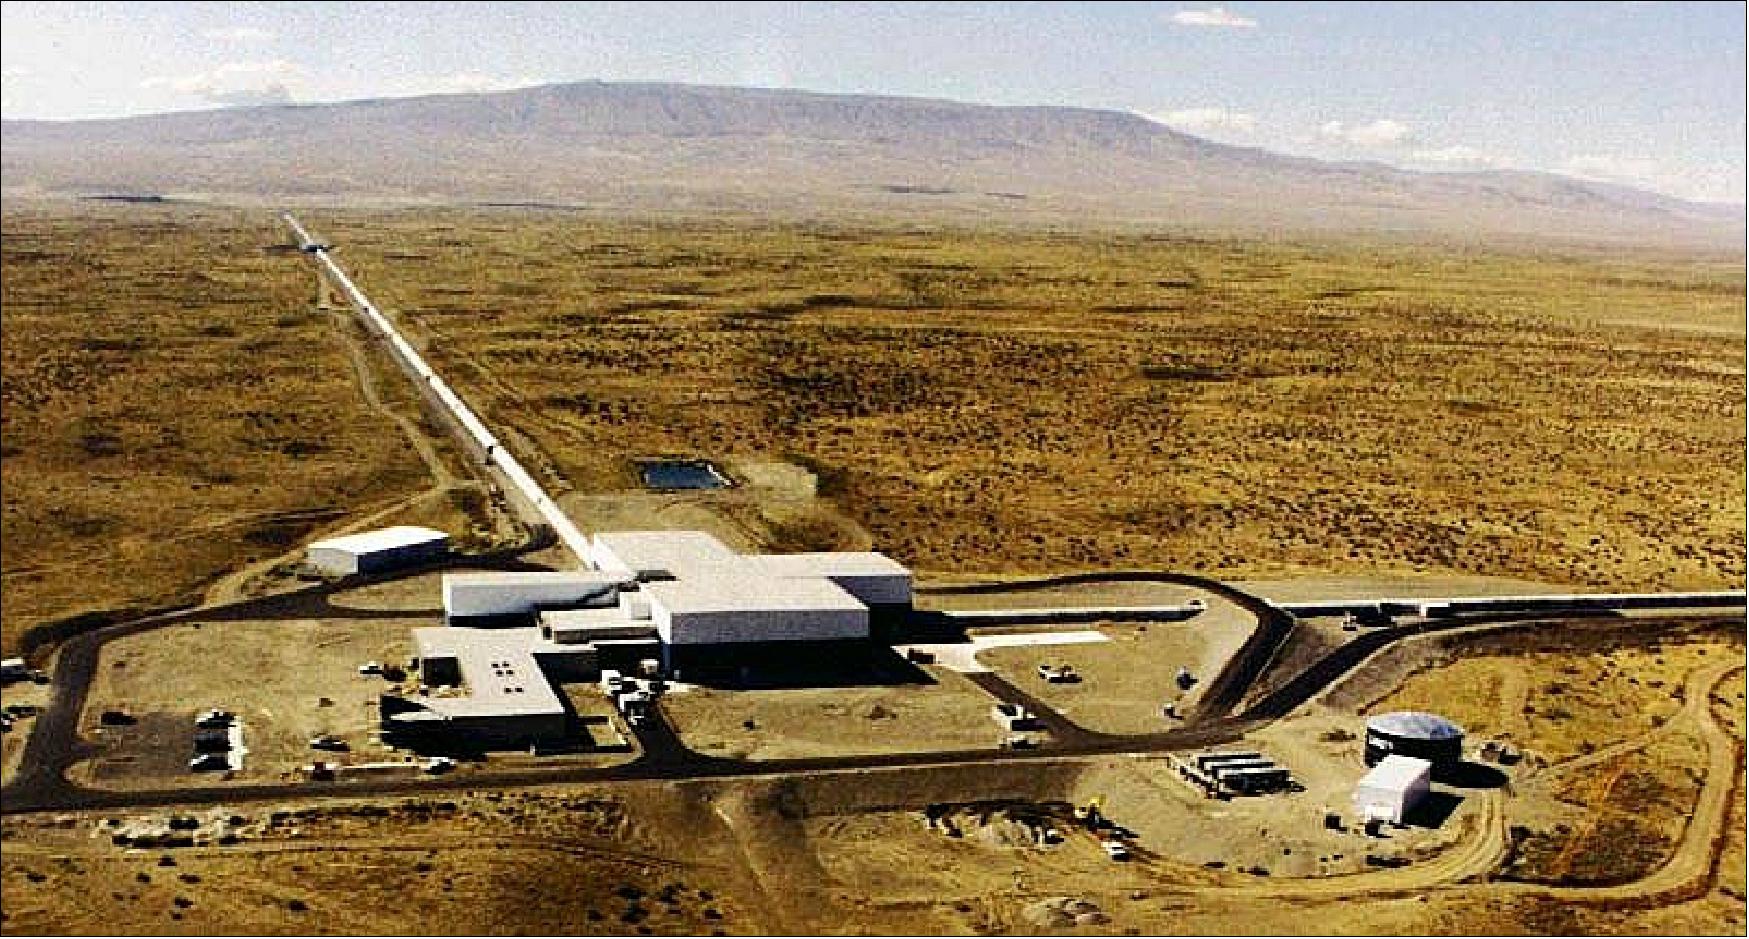 Figure 41: Aerial view of LIGO Hanford Observatory (image credit: LIGO)